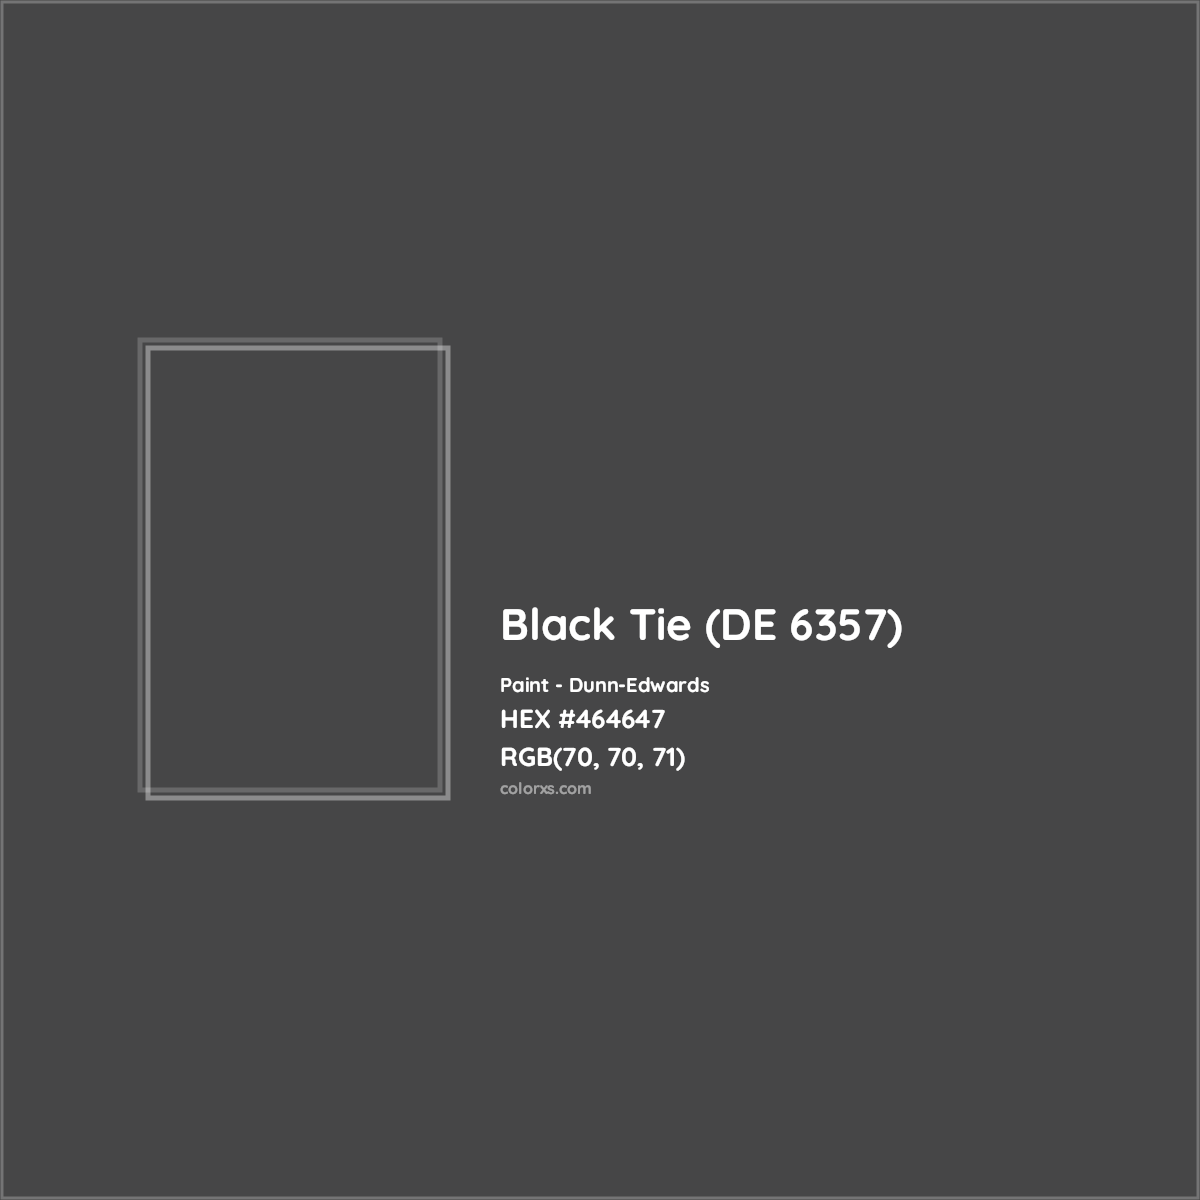 HEX #464647 Black Tie (DE 6357) Paint Dunn-Edwards - Color Code